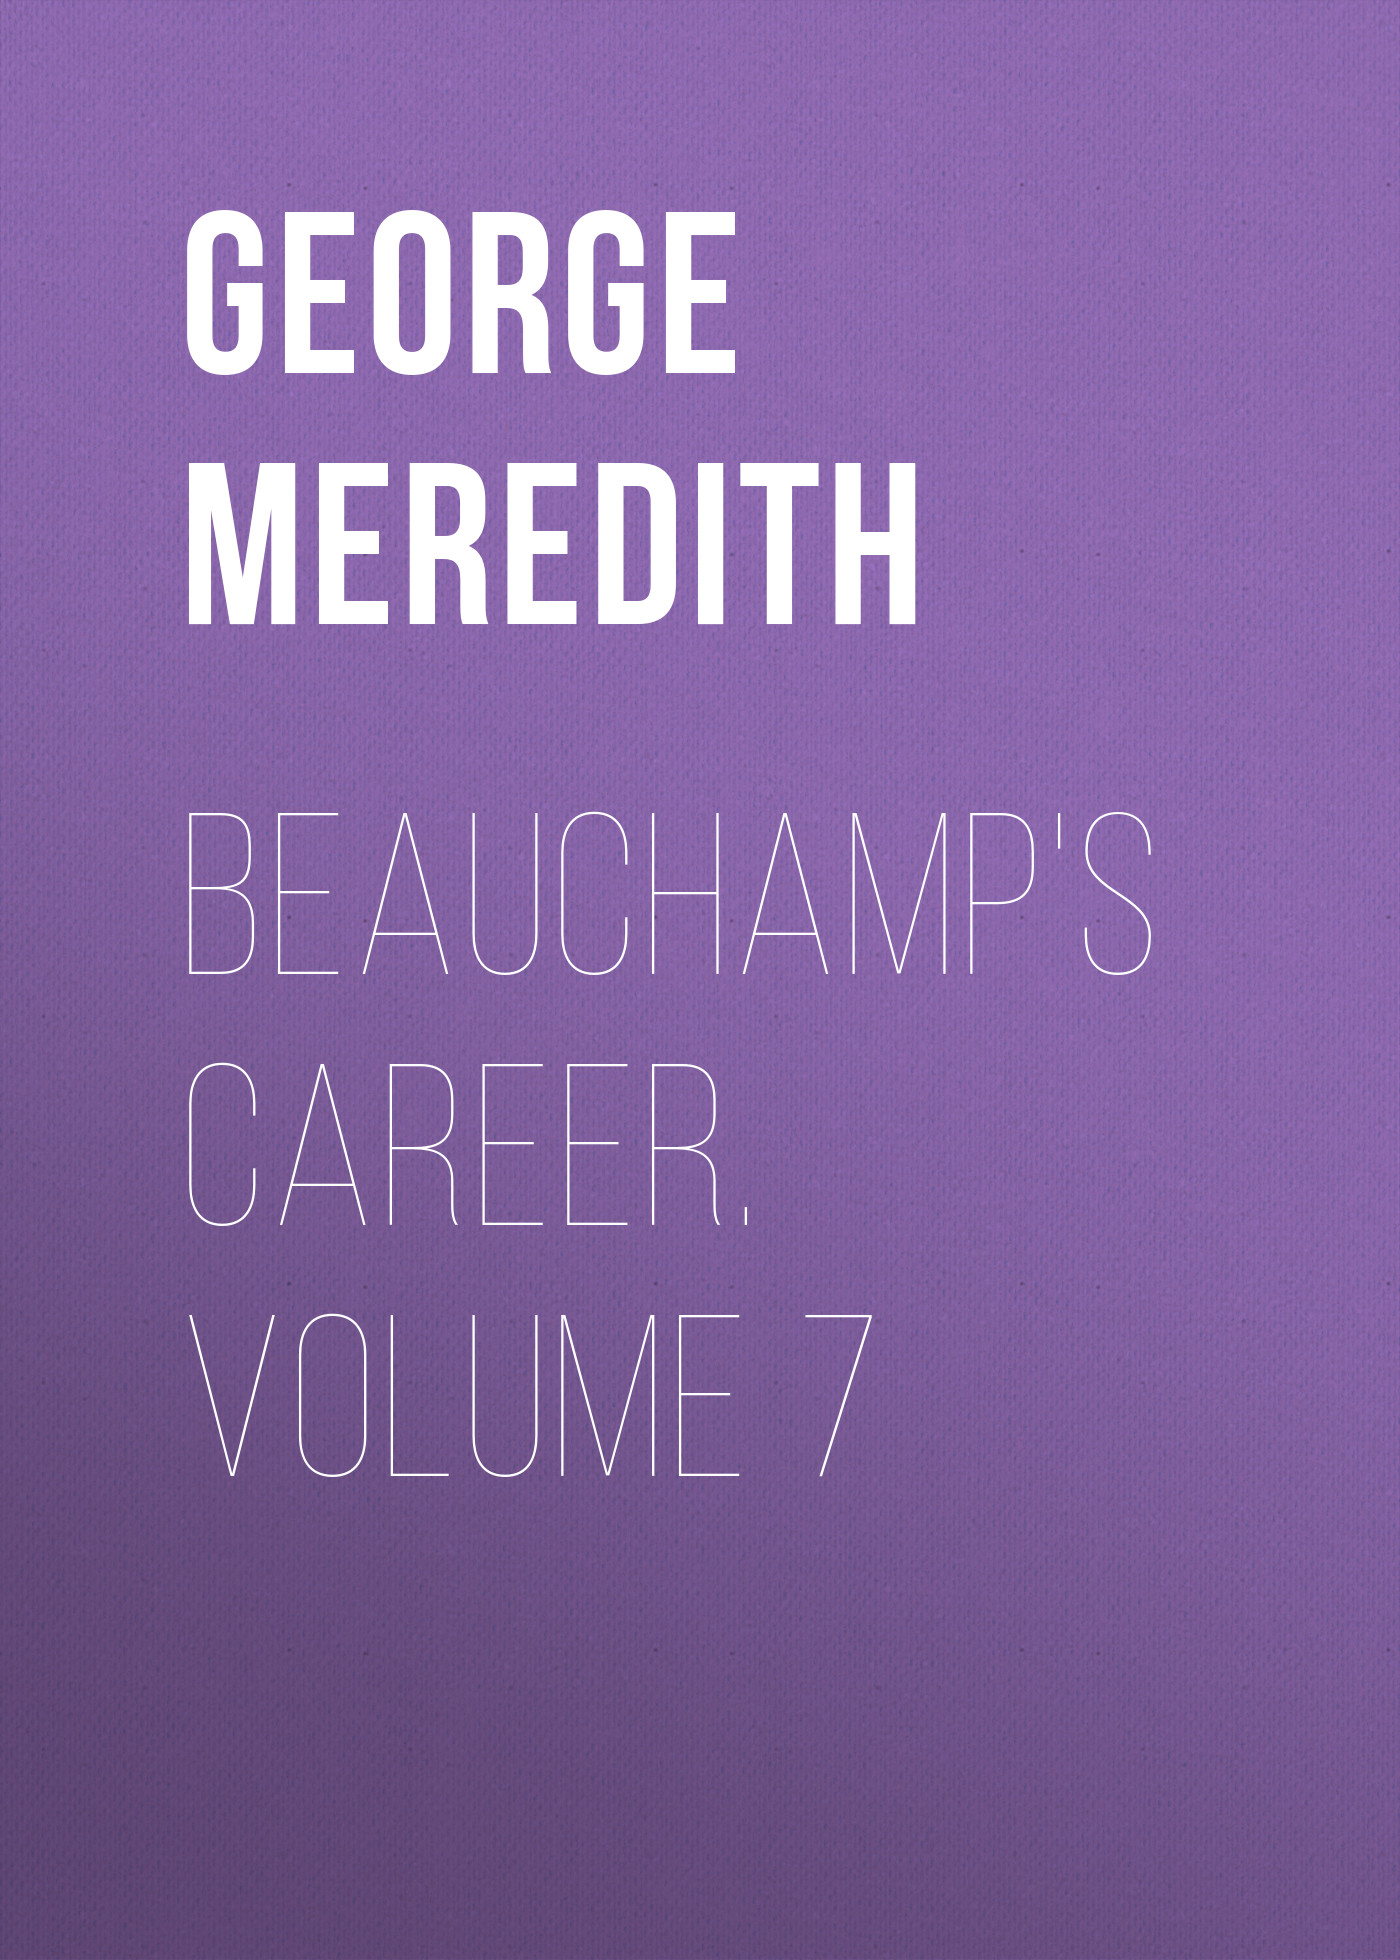 Книга Beauchamp's Career. Volume 7 из серии , созданная George Meredith, может относится к жанру Зарубежная классика, Литература 19 века, Зарубежная старинная литература. Стоимость электронной книги Beauchamp's Career. Volume 7 с идентификатором 36096325 составляет 0 руб.